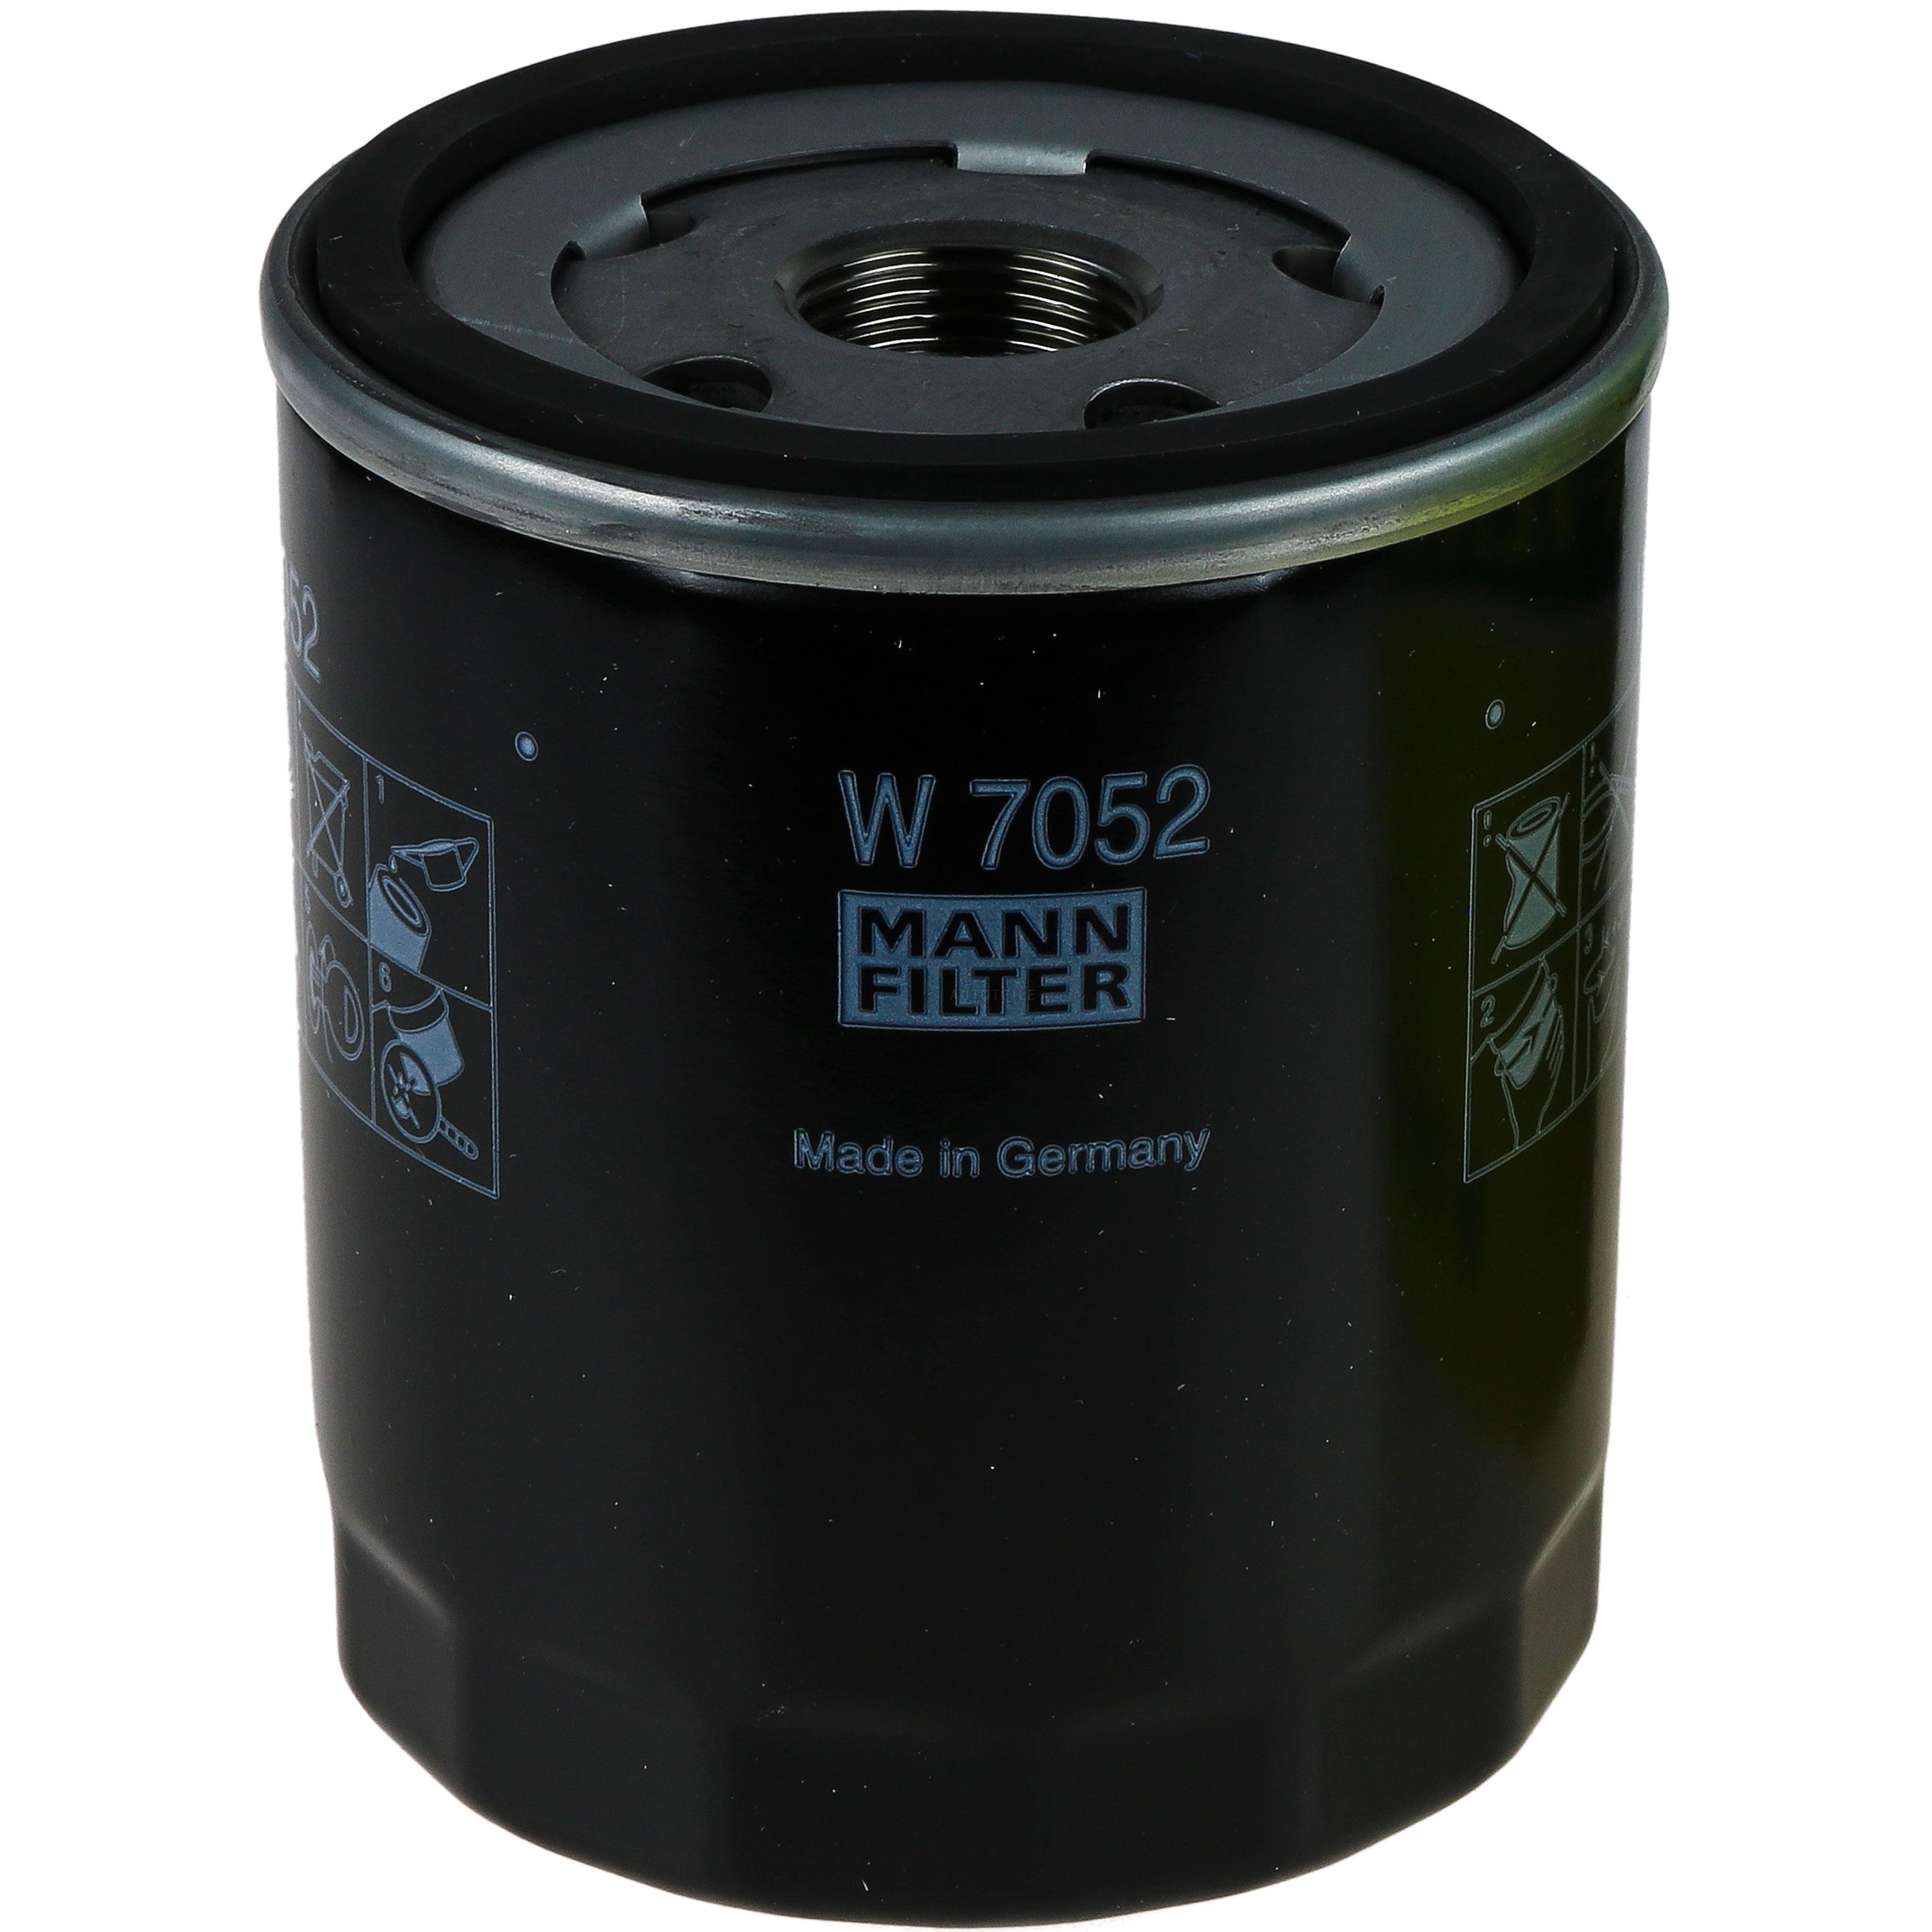 MANN-FILTER Ölfilter W 7052 Oil Filter